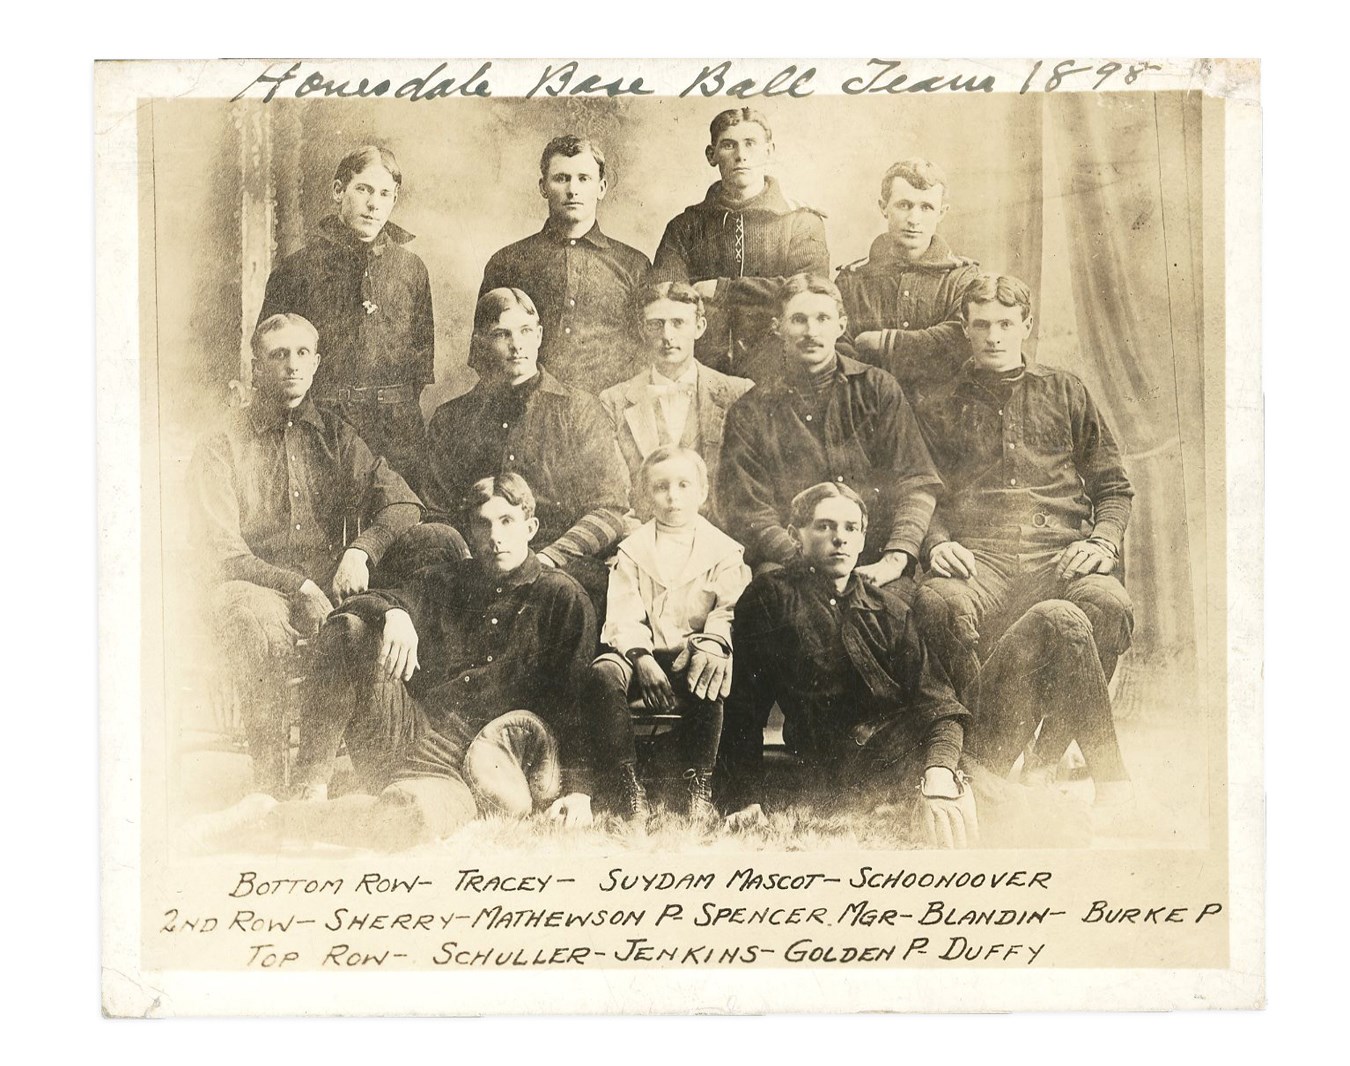 - 1898 Christy Mathewson Team Photograph - Earliest Known